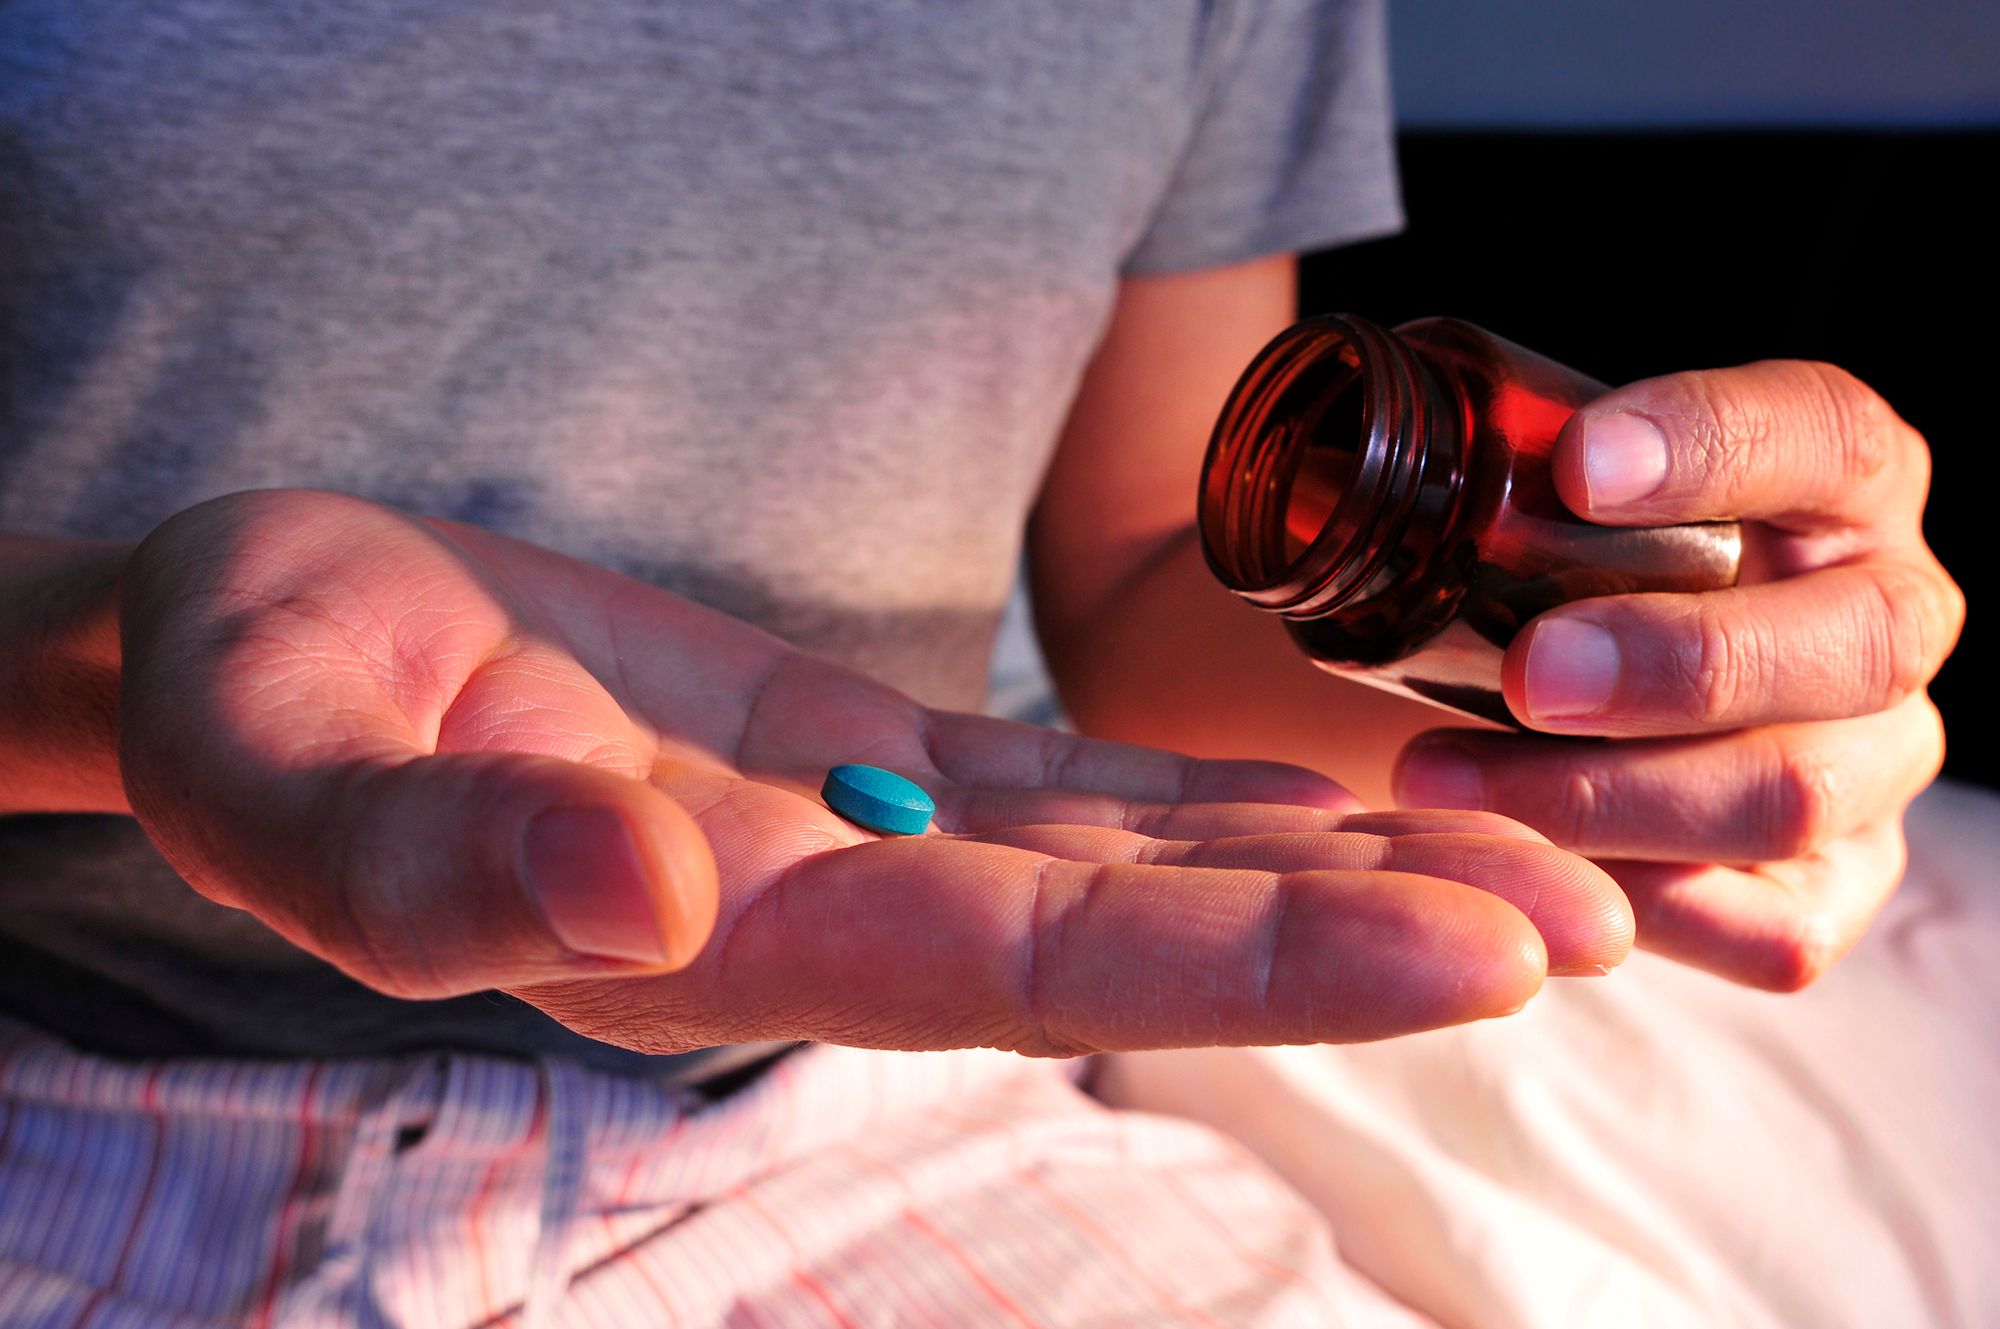 Mann hält ein Gefäß und eine blaue Pille in der Hand